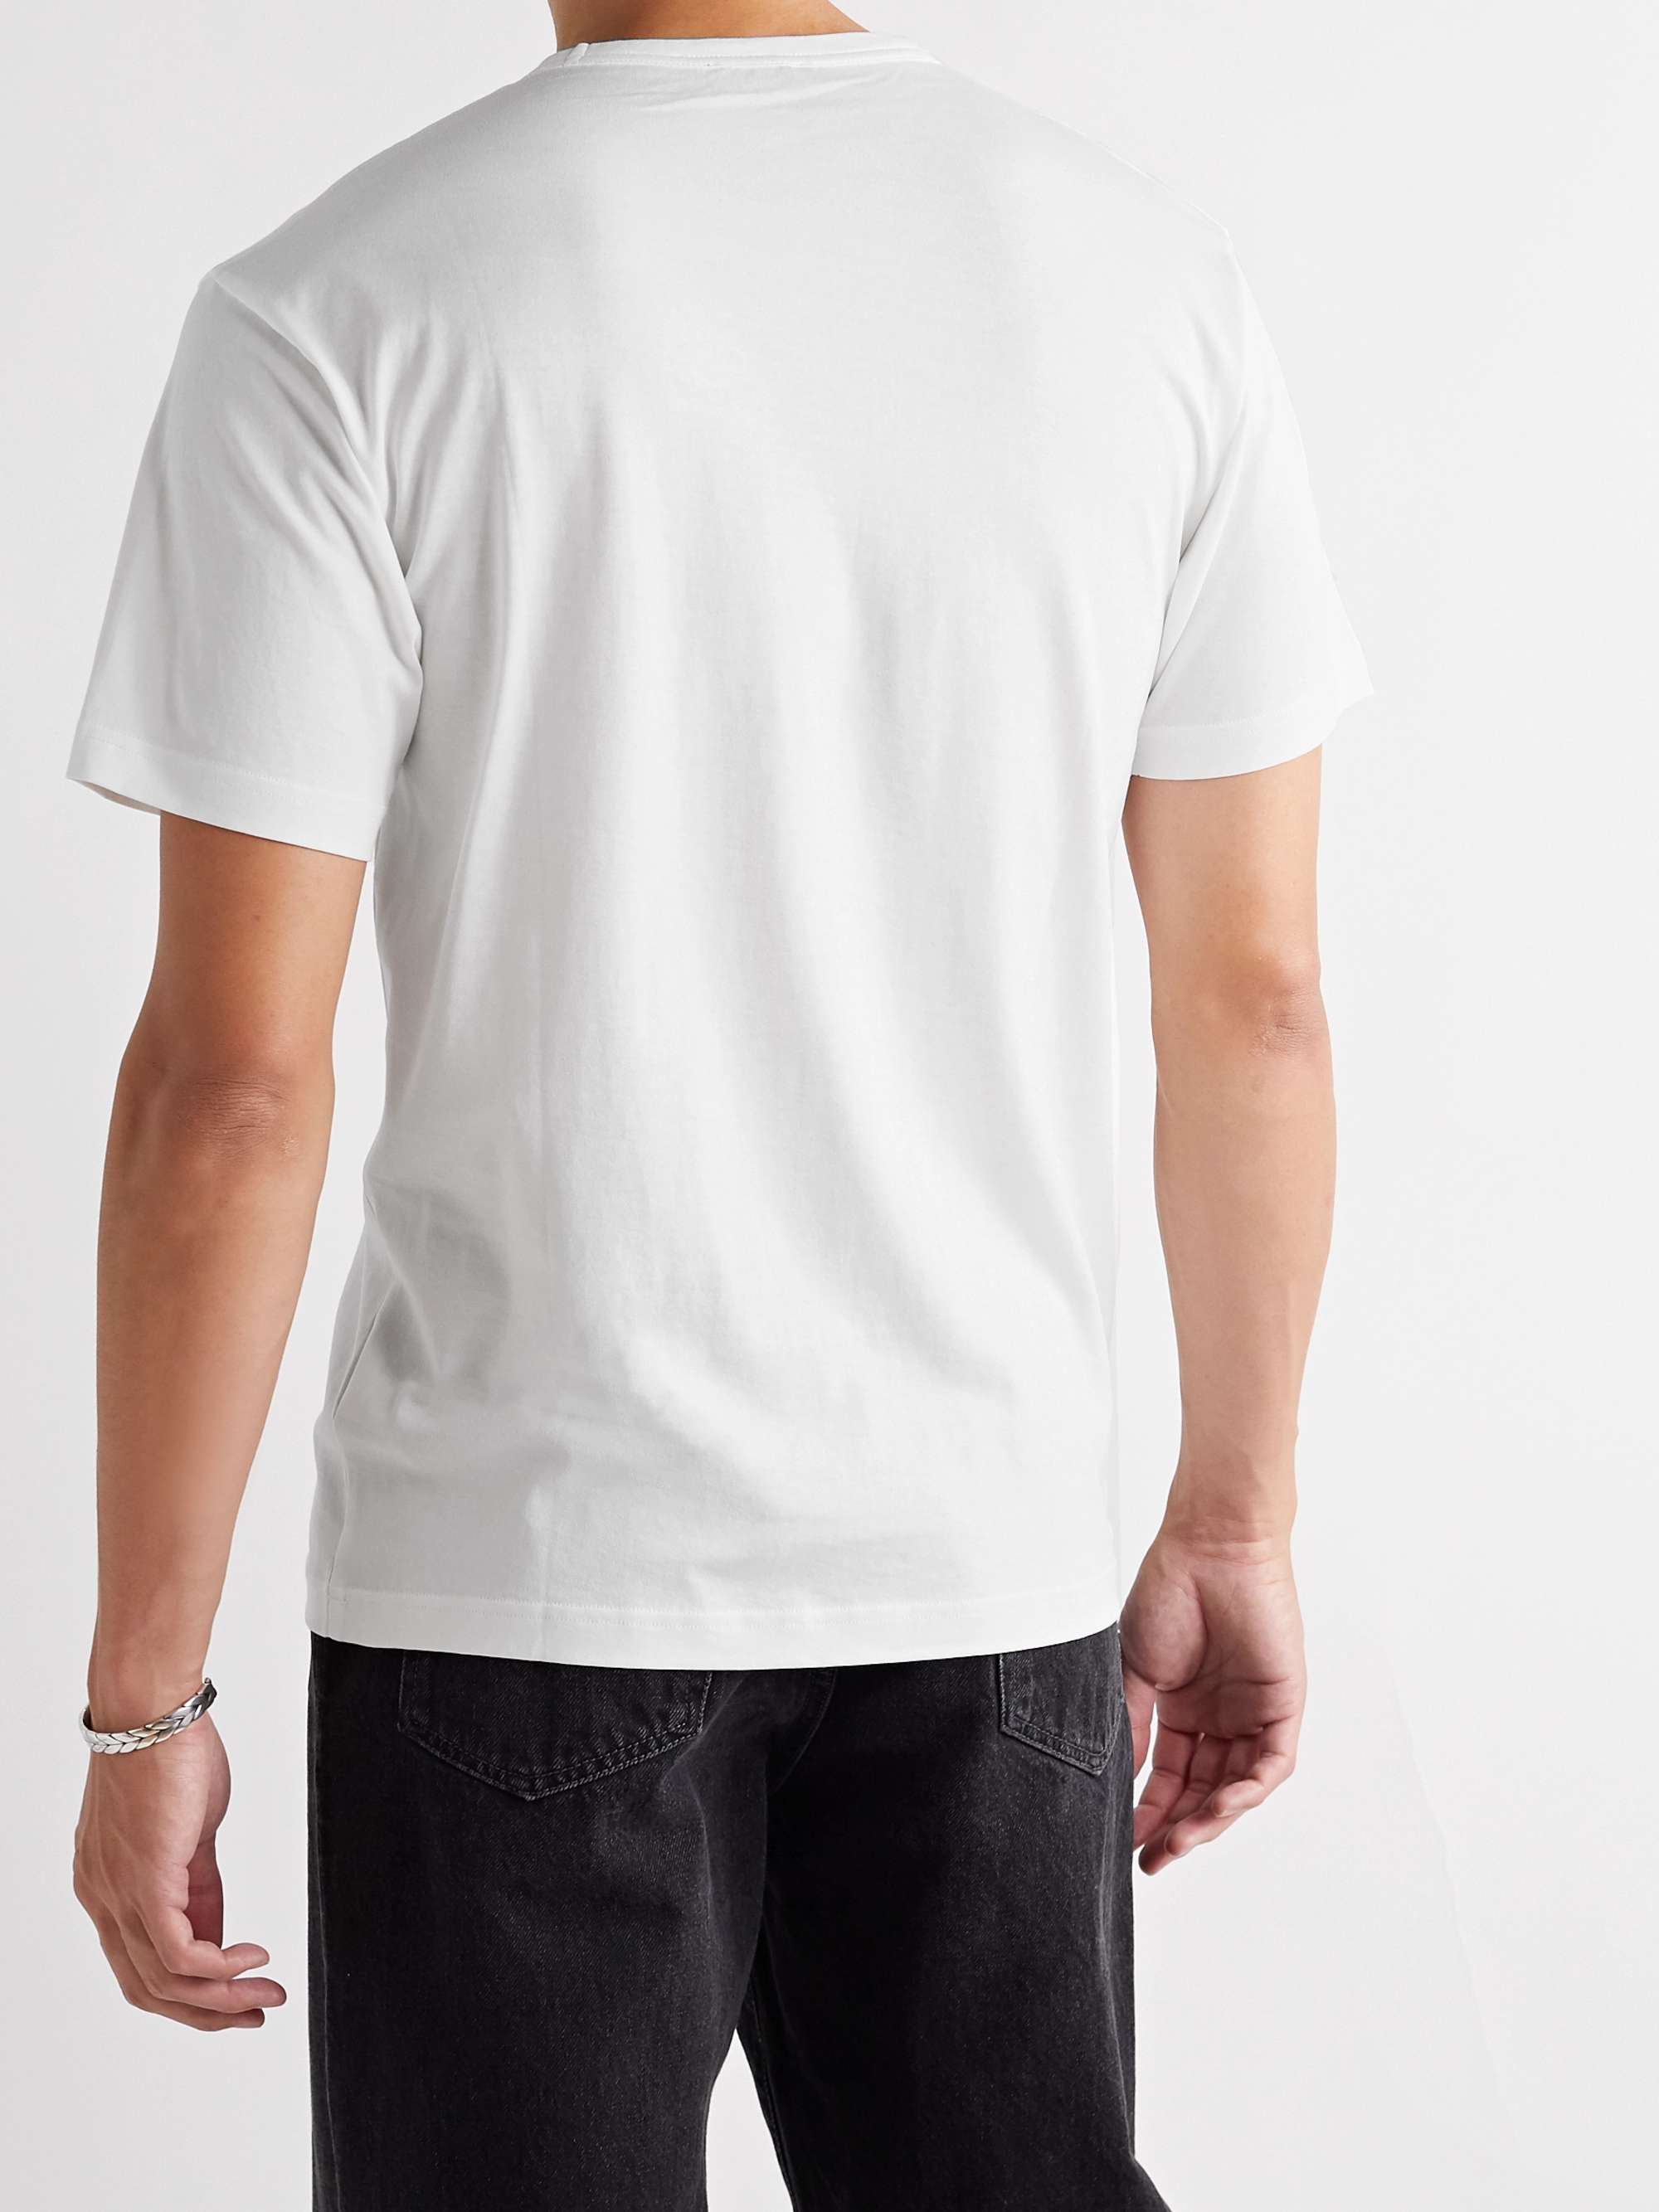 ACNE STUDIOS Nash Logo-Appliquéd Cotton-Jersey T-Shirt